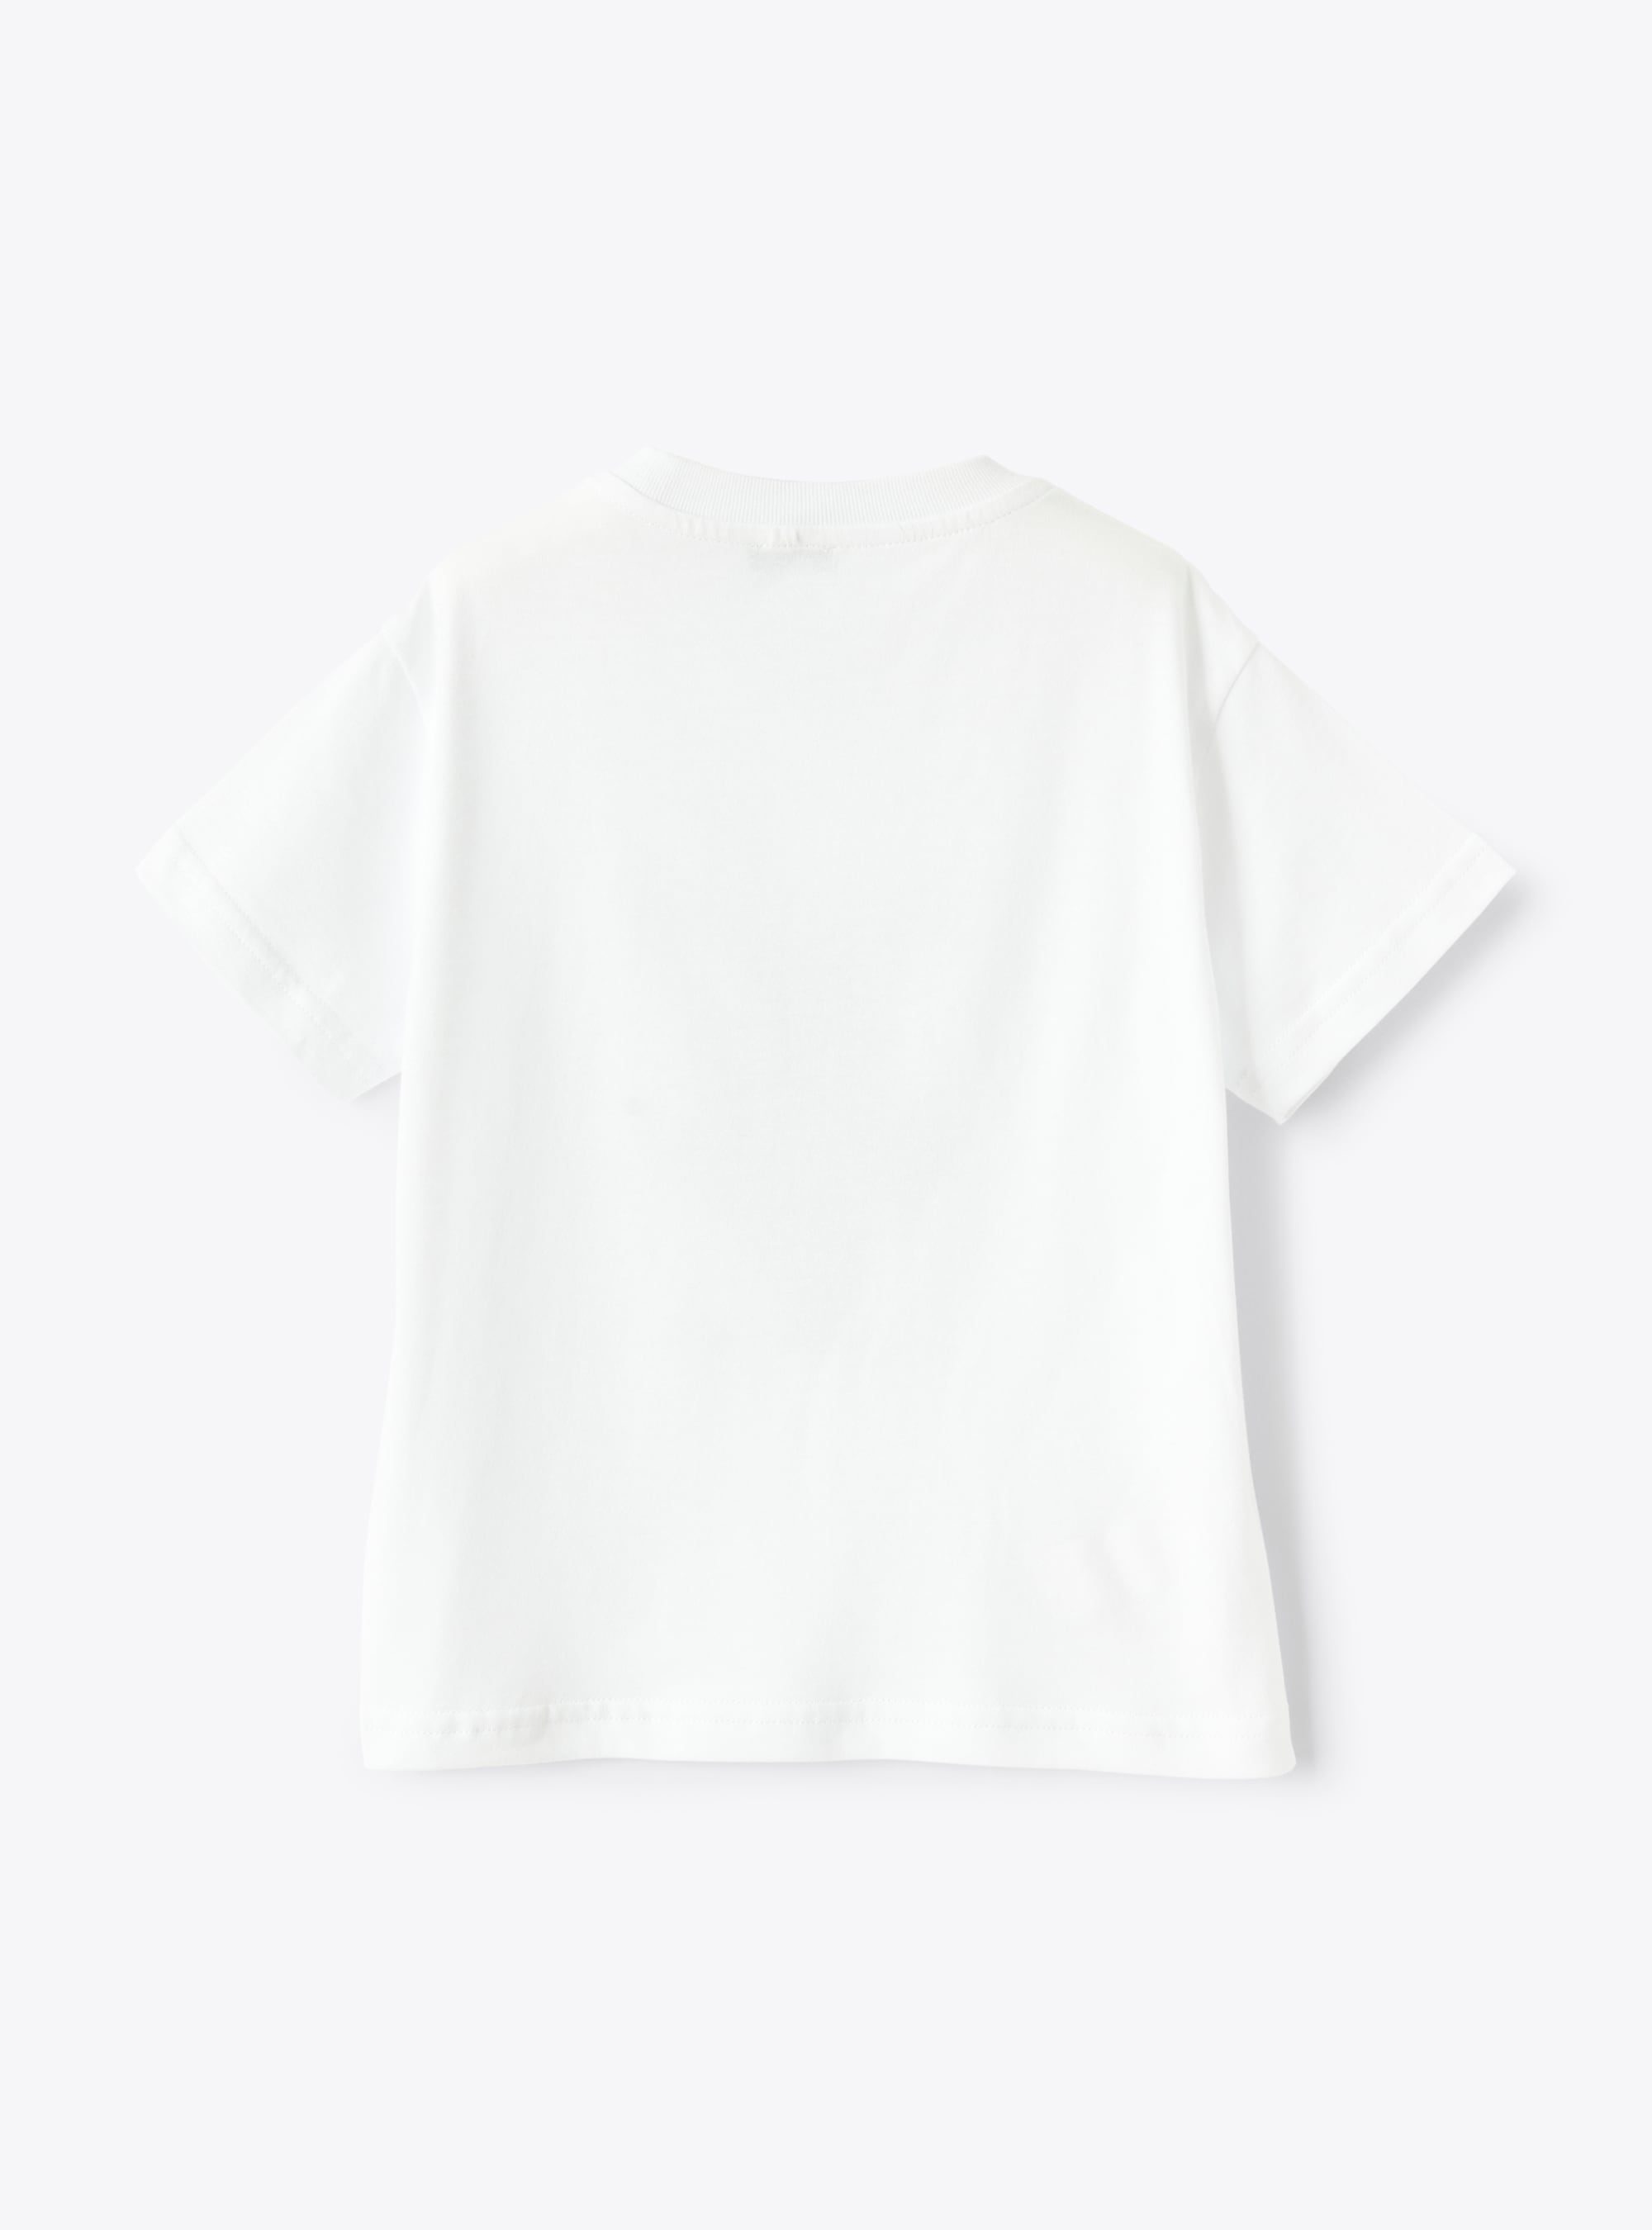 Weißes T-Shirt mit aufgedrucktem dunkelgrauem Motorrad - Weiss | Il Gufo